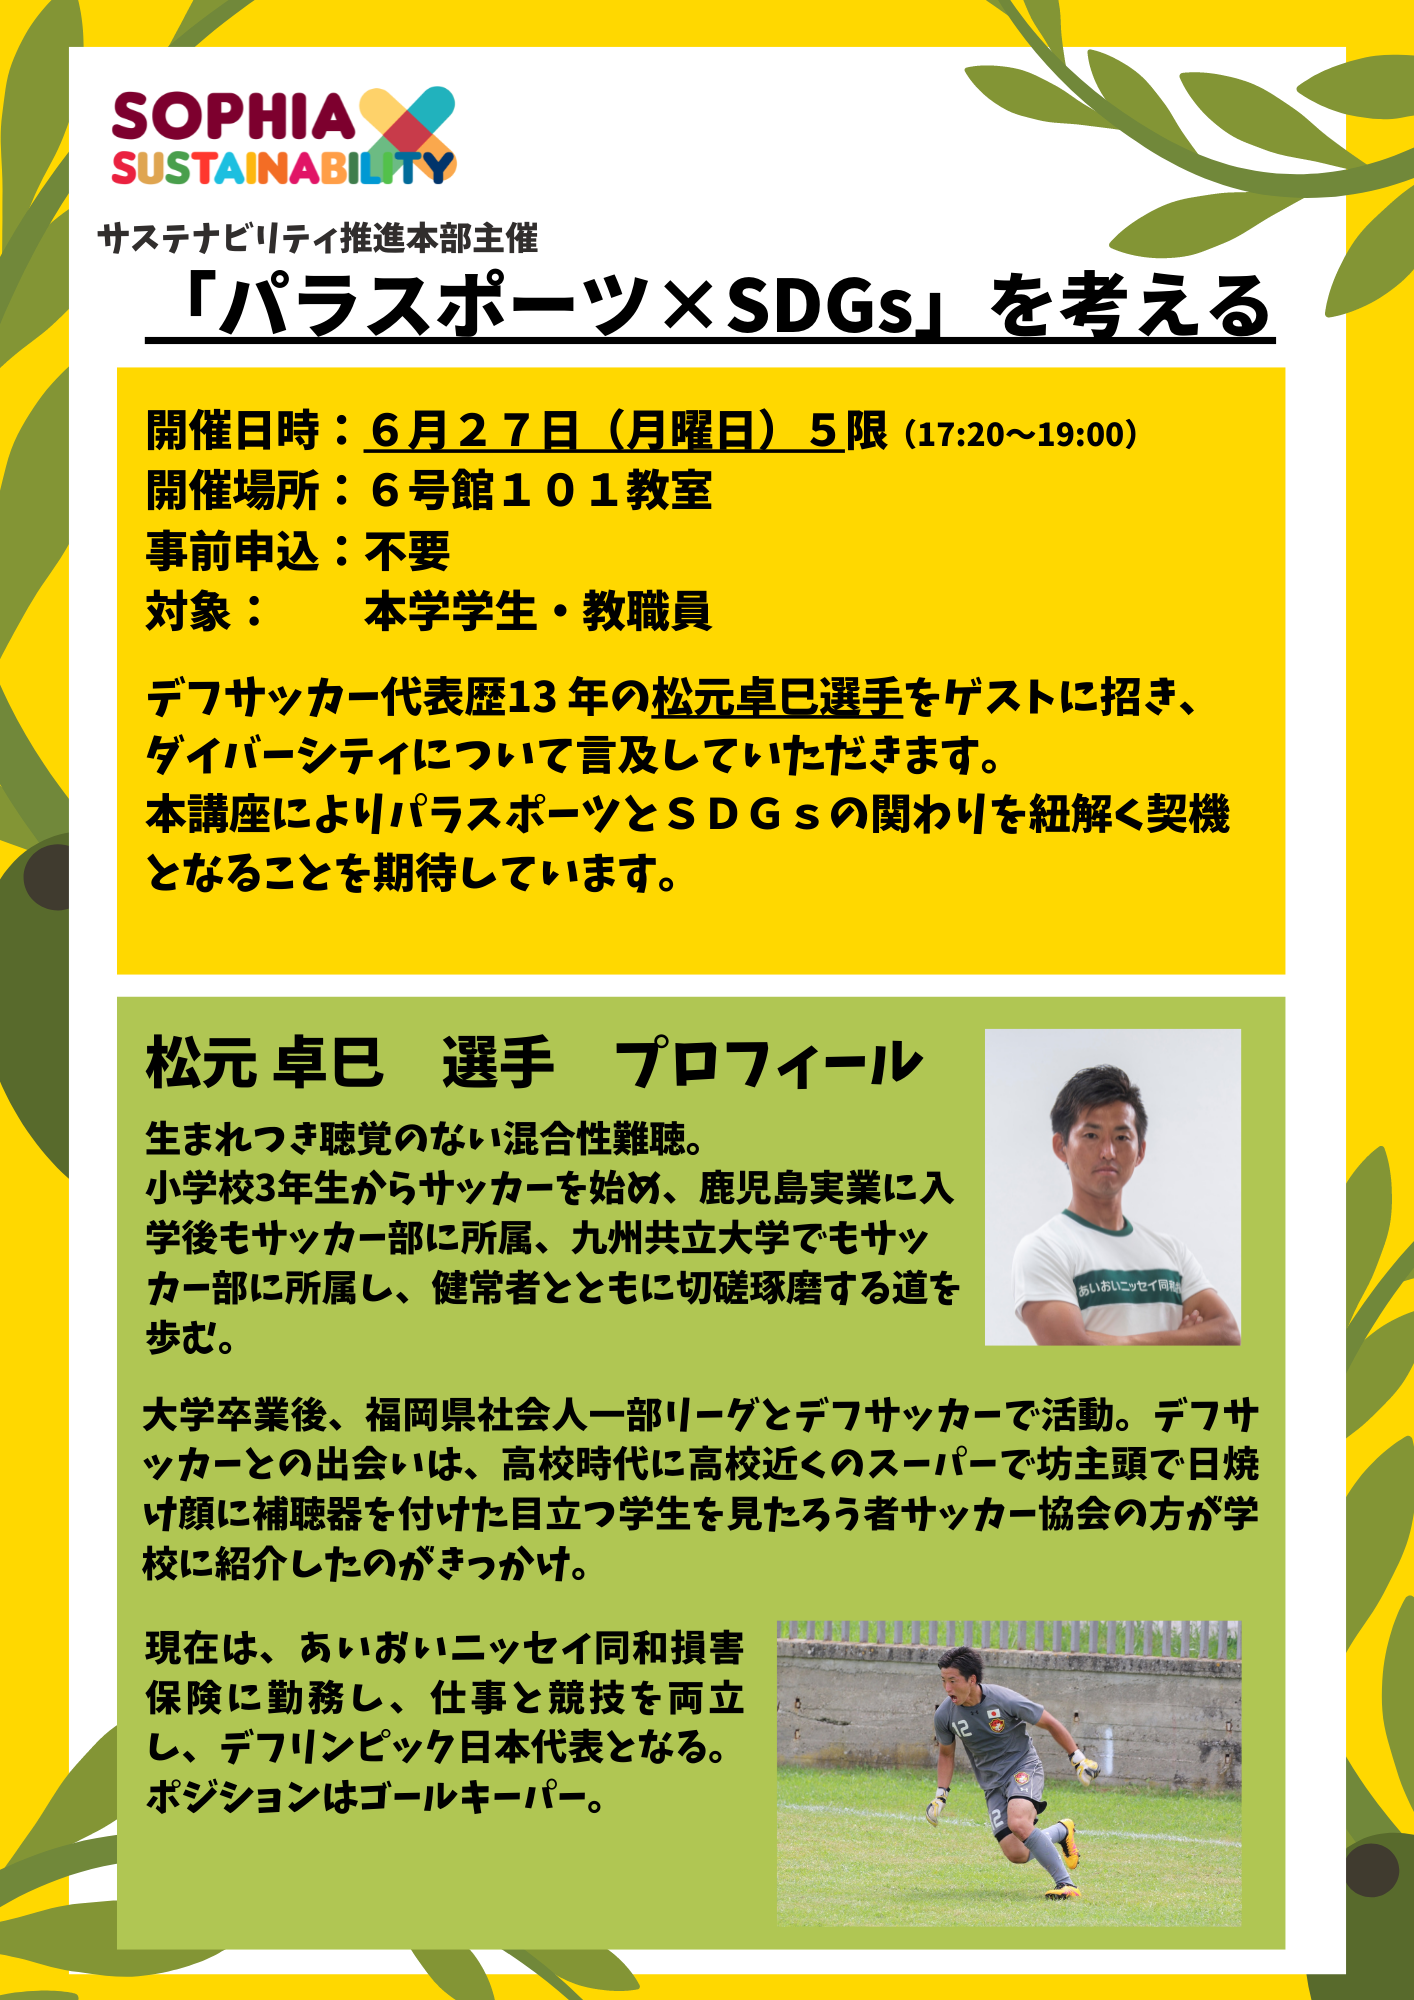 6/27（月）5限開催 「パラスポーツ×SDGｓを考える」デフサッカー日本代表選手講演会